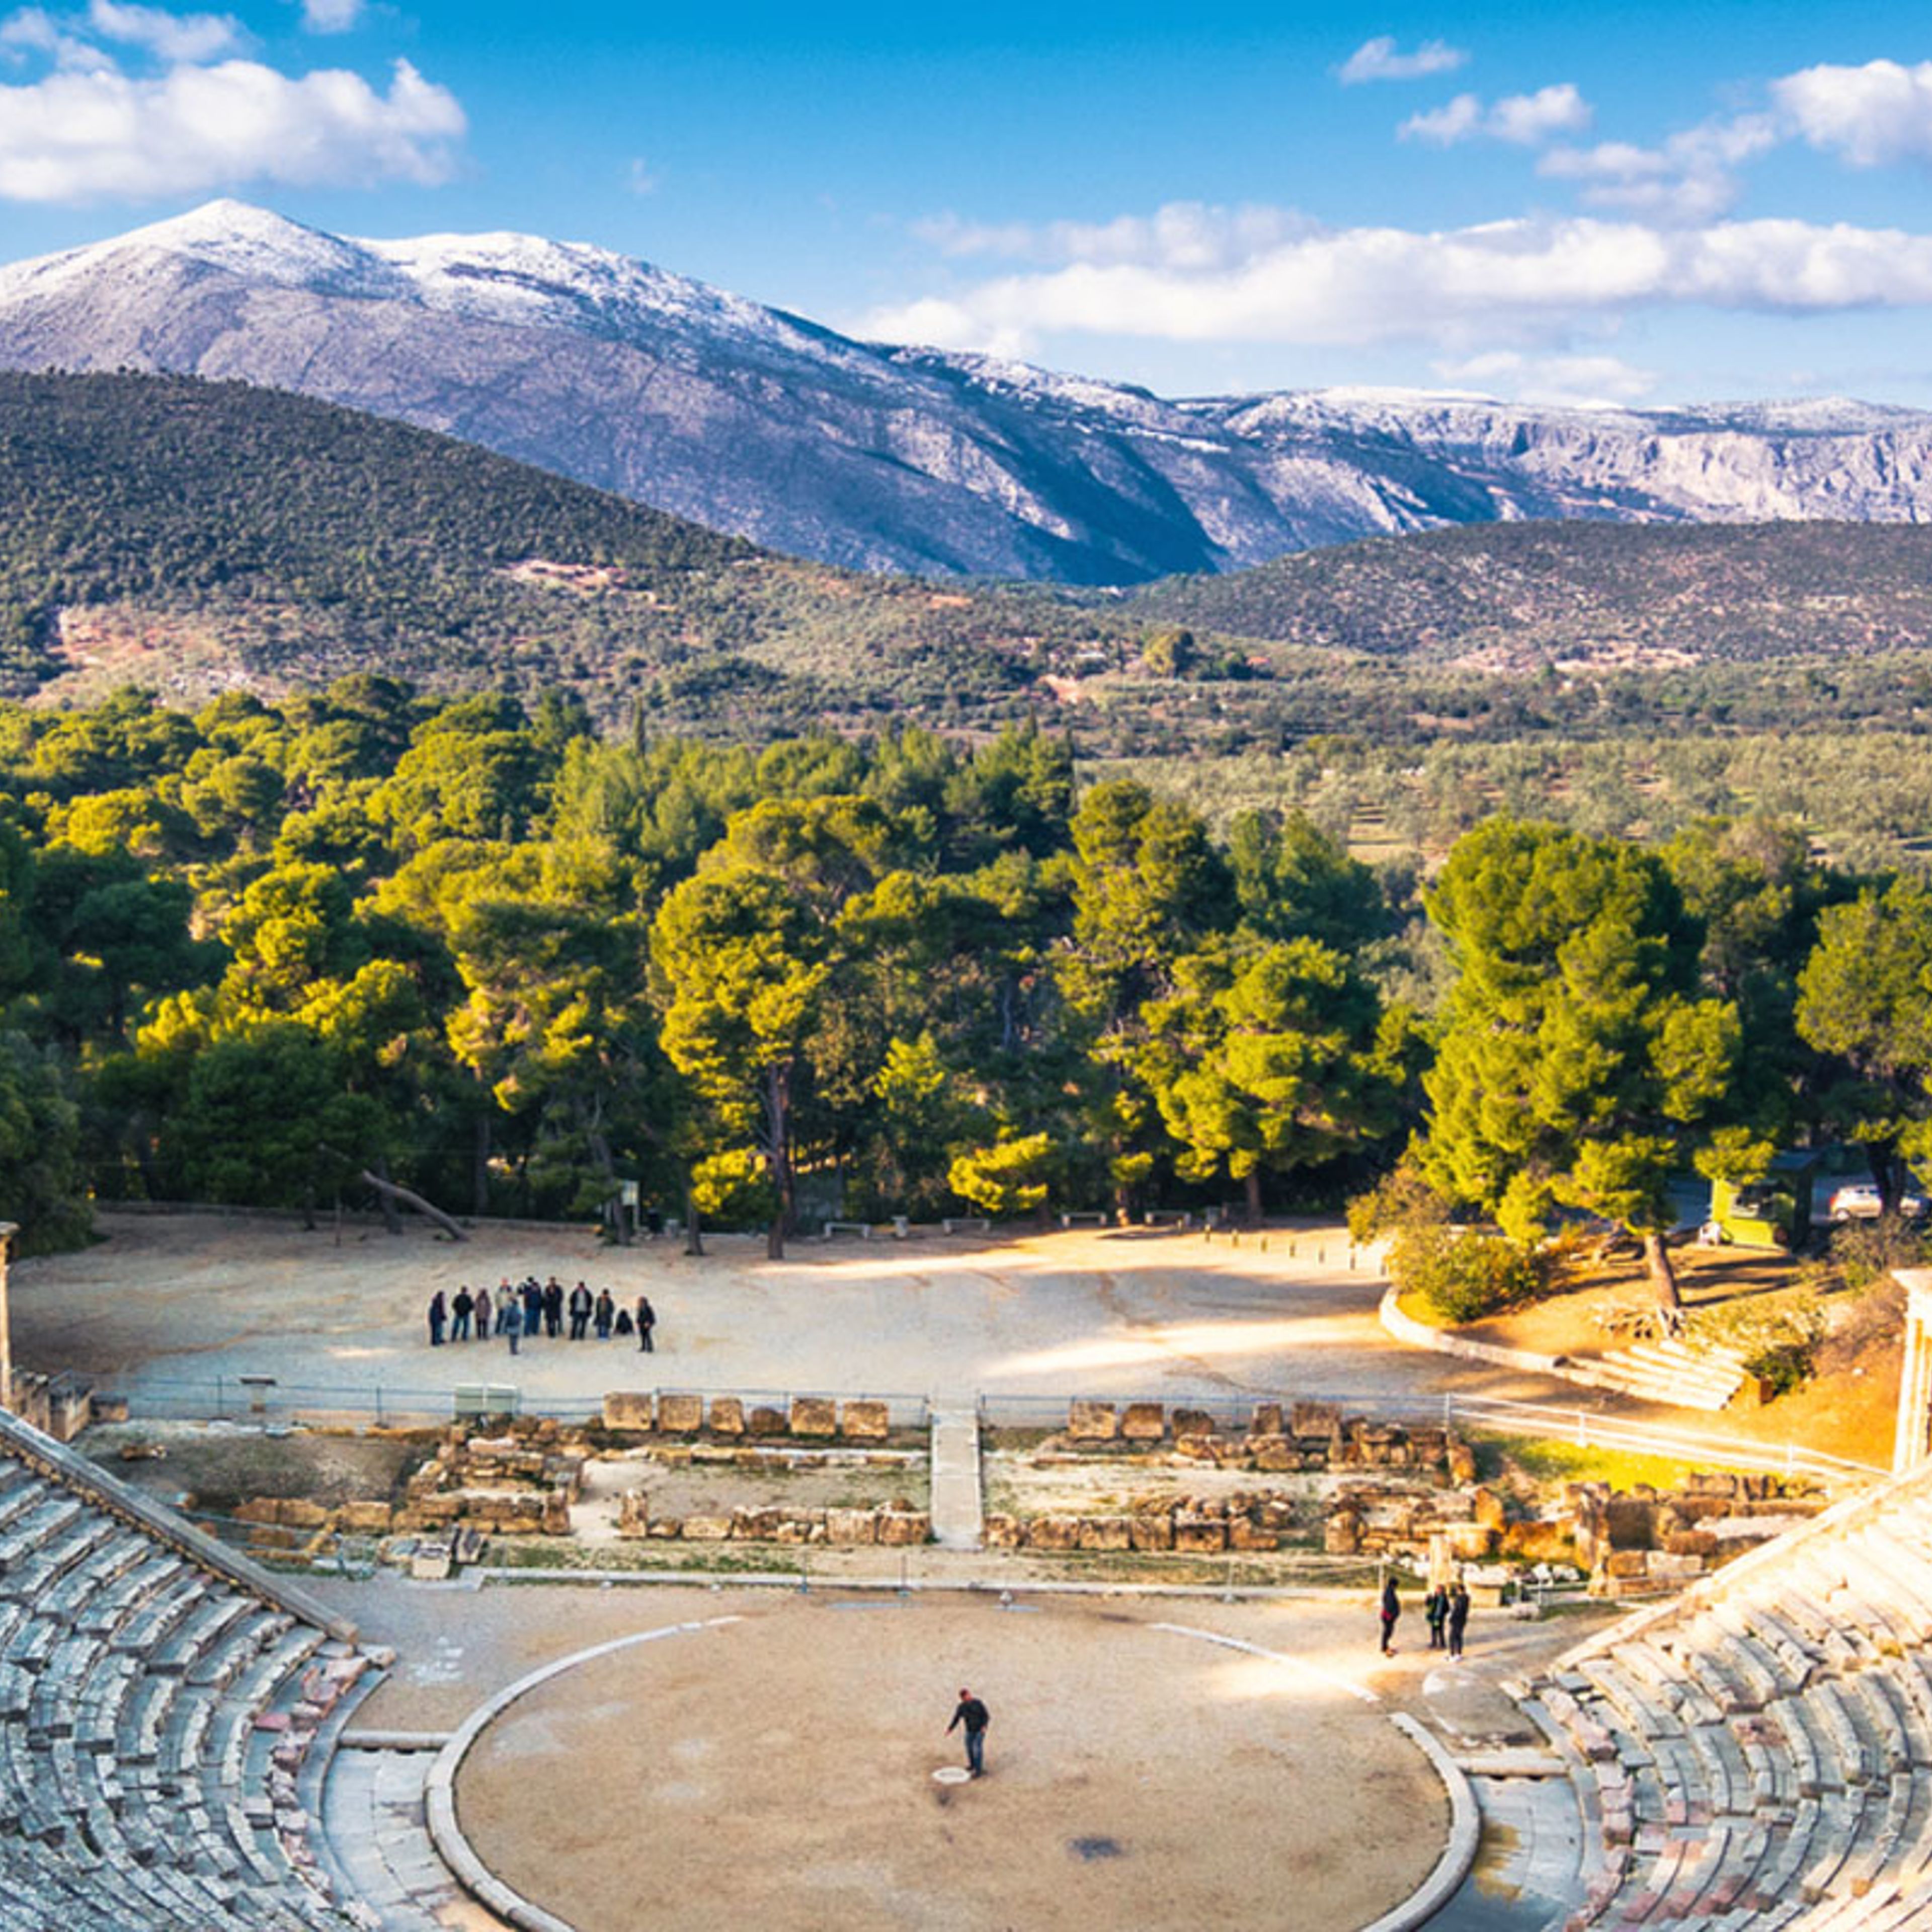 Das alte Theater von Epidaurus (oder "Epidaurus")